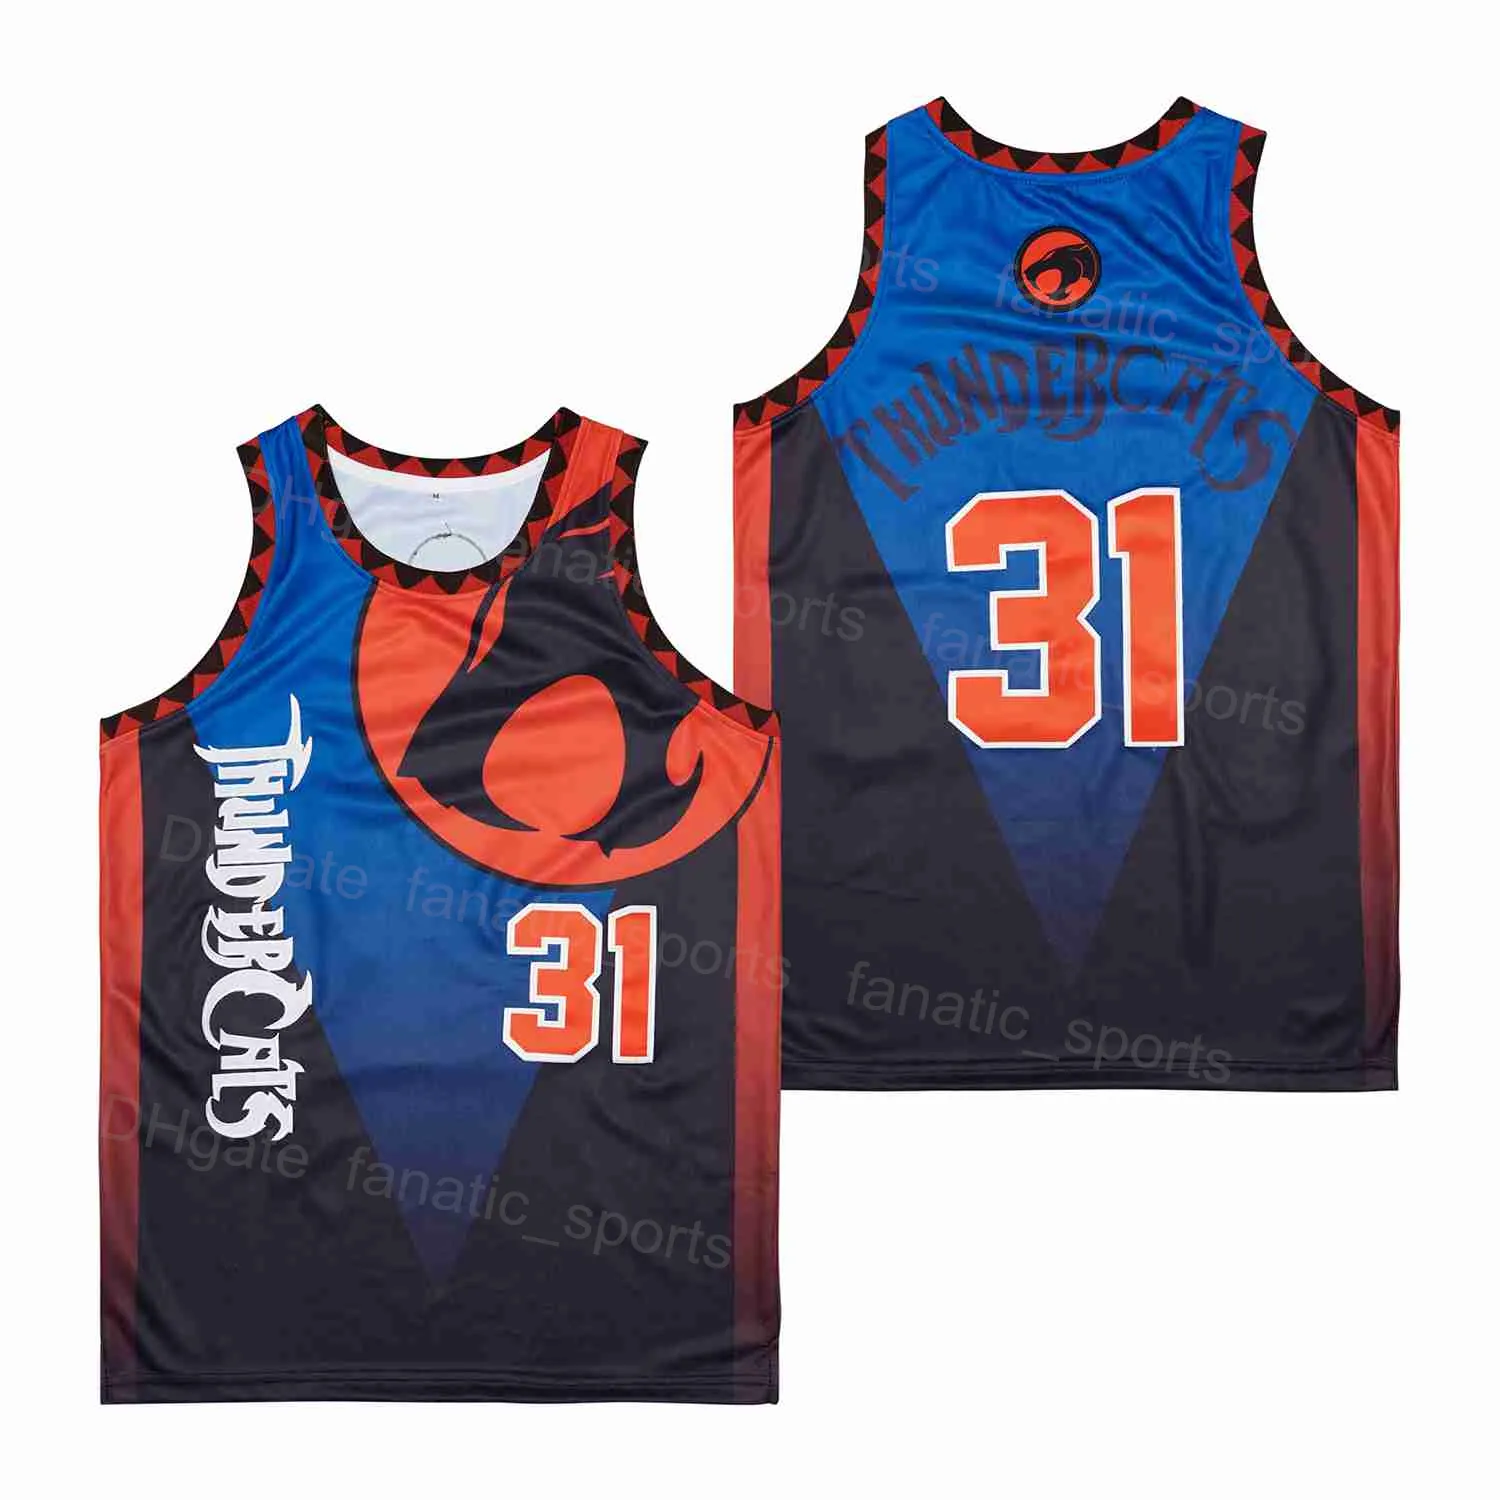 男映画バスケットボールジャージ 31 サンダーキャッツユニフォームヒップホップチームカラーブルー通気性スポーツファンのための純粋な綿ヒップホップ刺繍と縫製優れた品質